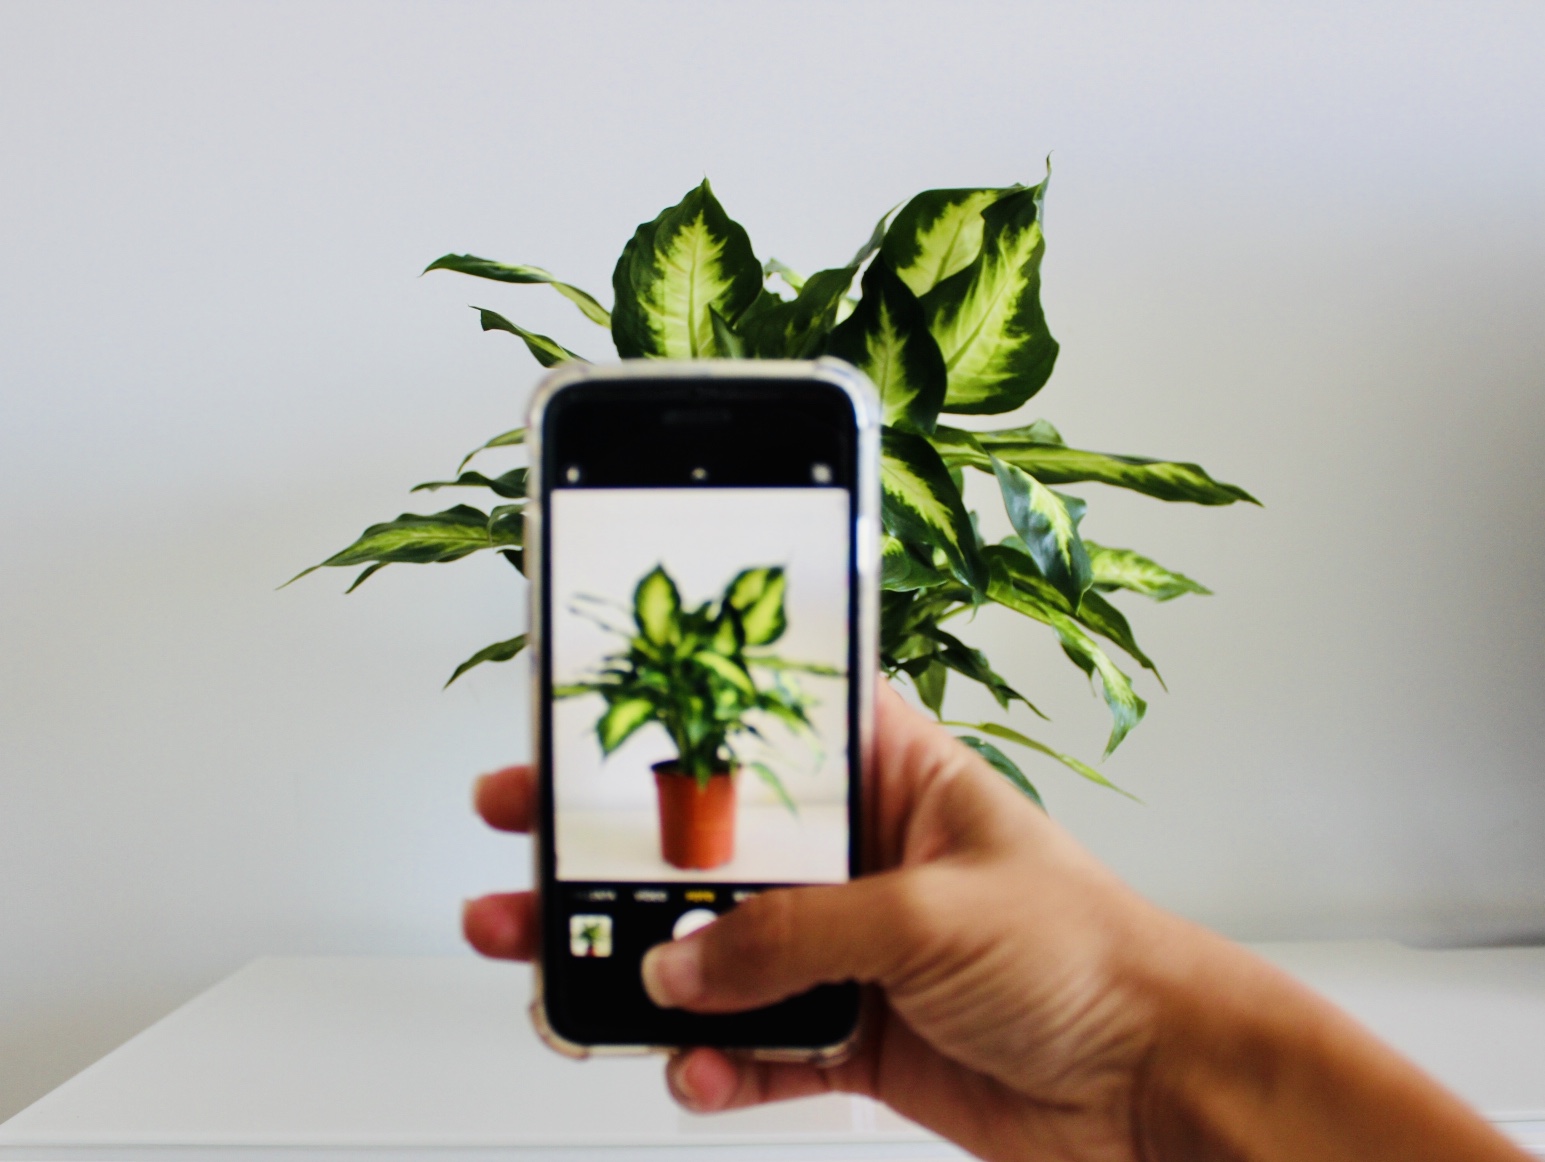 Foto para Instagram de una planta desde un smartphone aplicando los mejores consejos de fotografía.